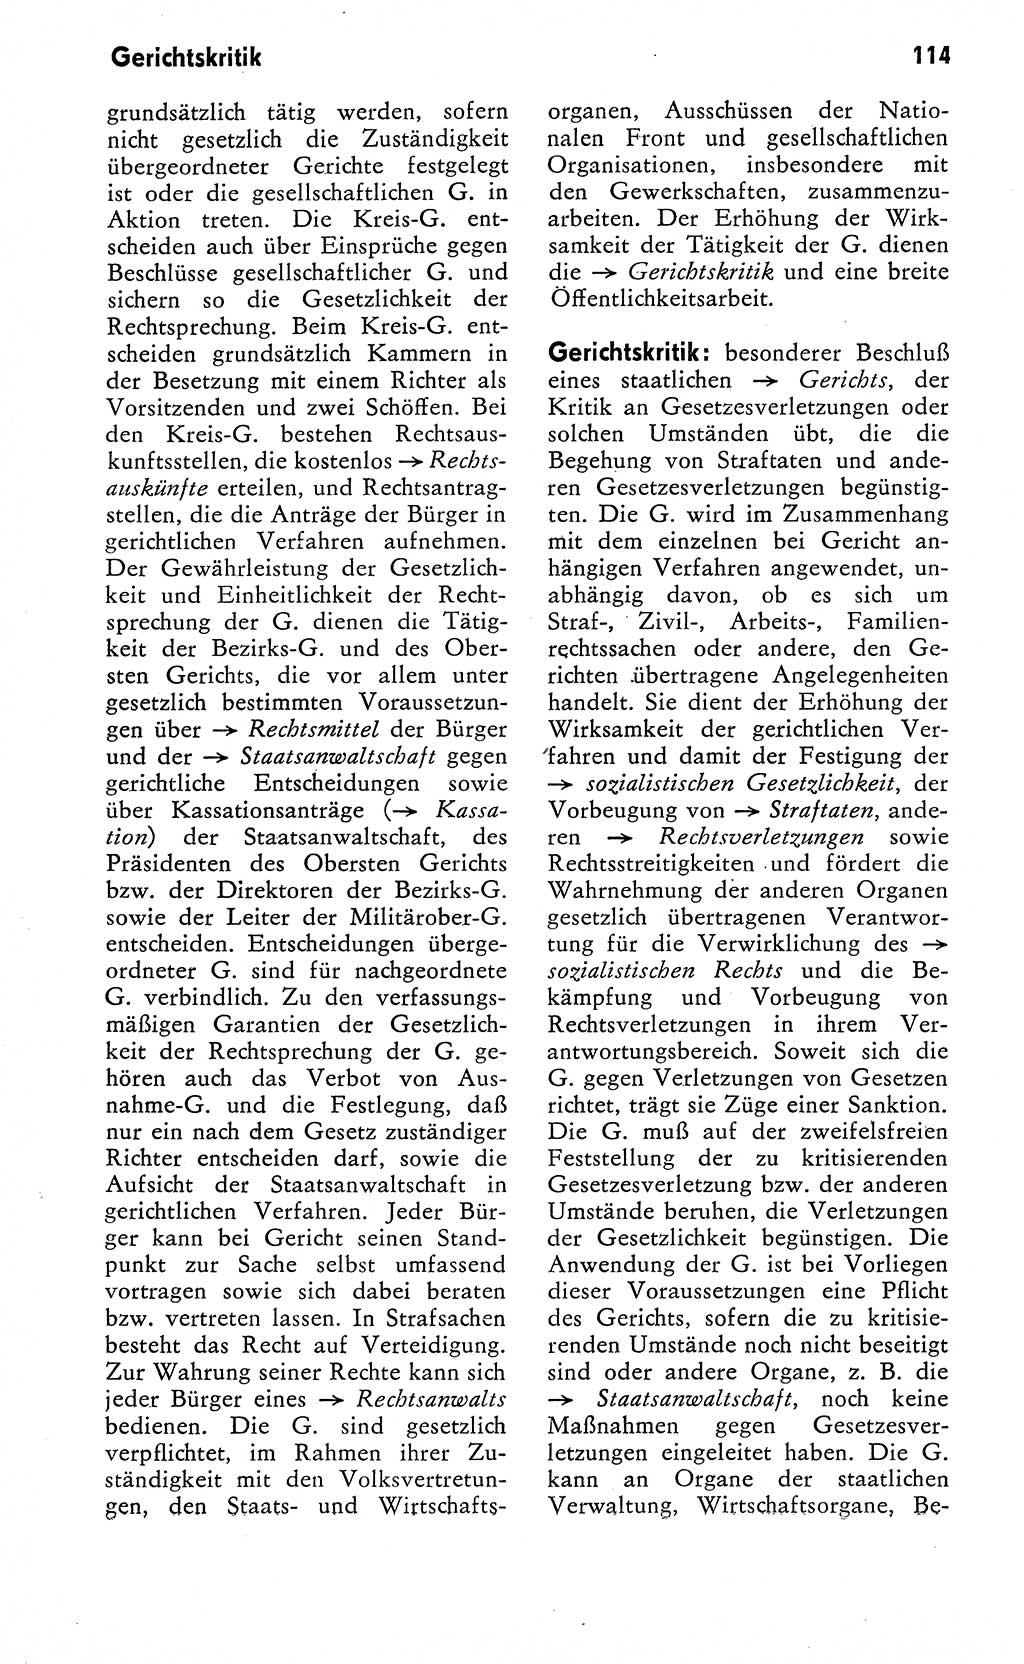 WÃ¶rterbuch zum sozialistischen Staat [Deutsche Demokratische Republik (DDR)] 1974, Seite 114 (Wb. soz. St. DDR 1974, S. 114)